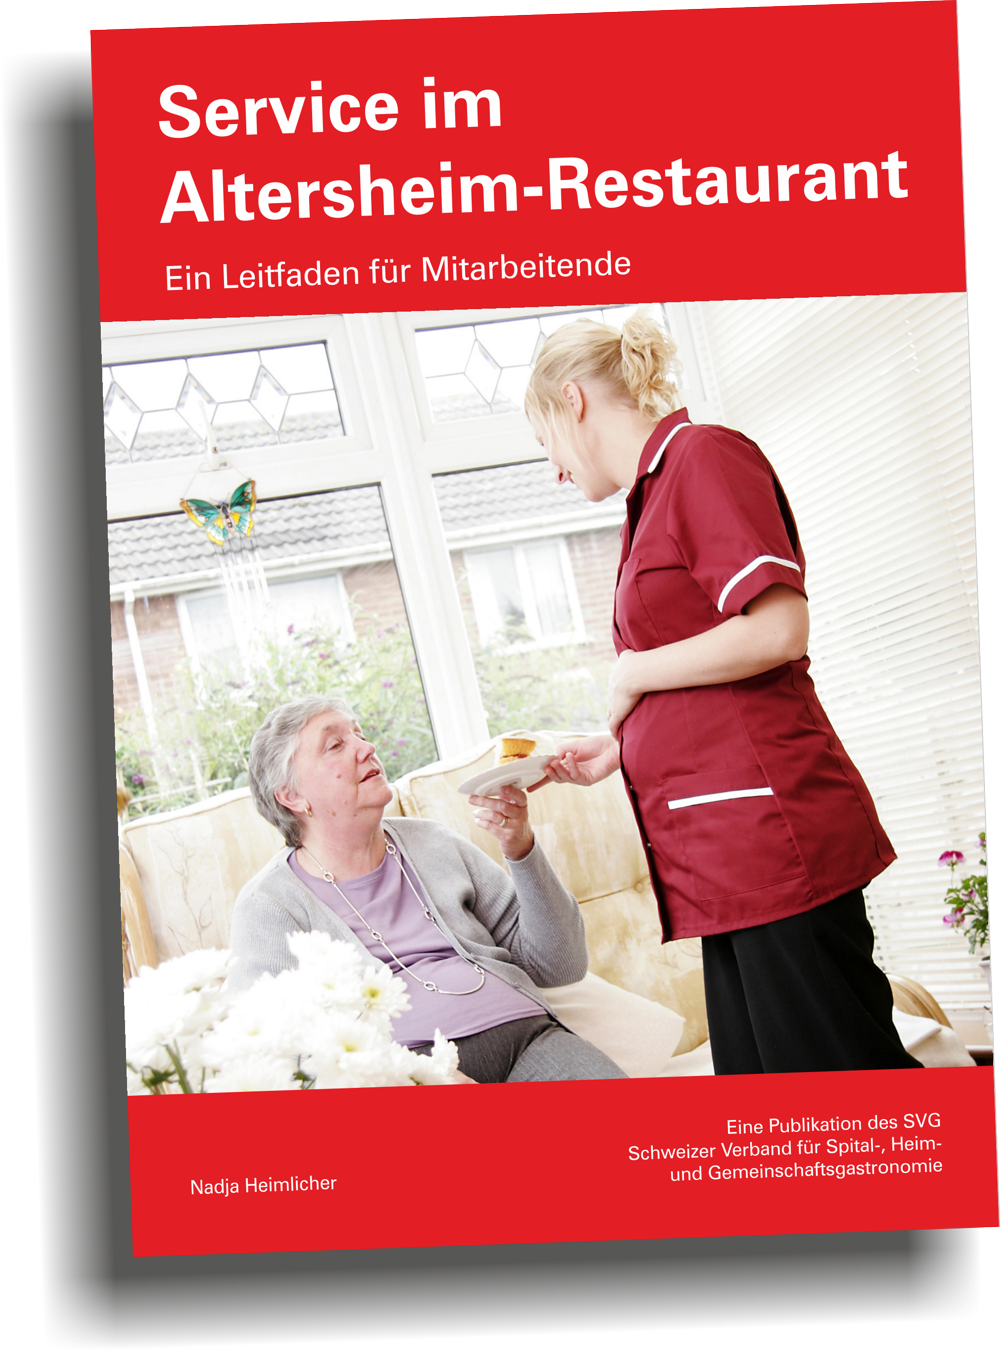 Leitfaden "Service im Altersheim-Restaurant"